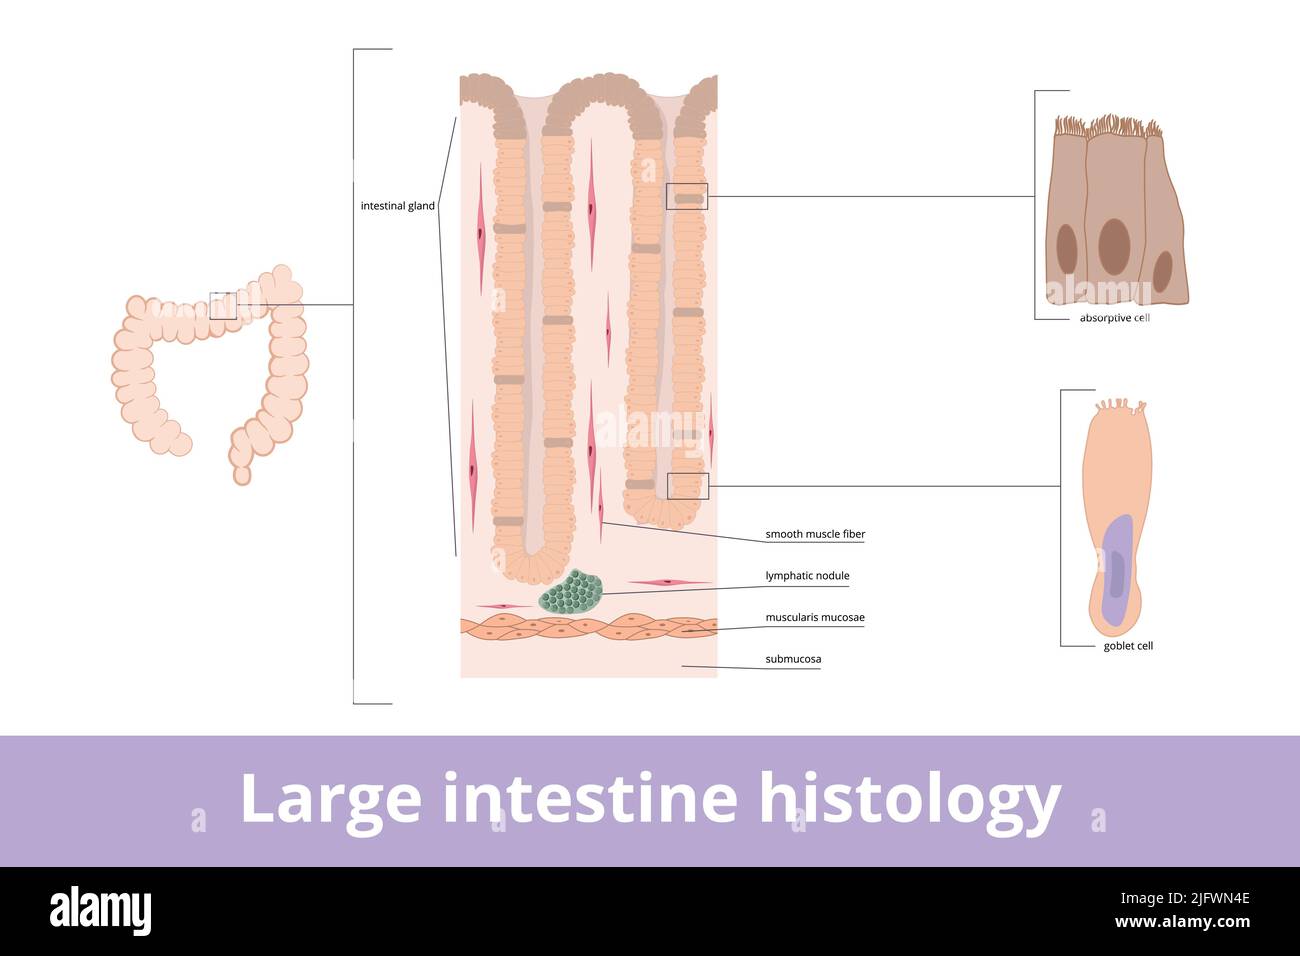 Istologia dell'intestino crasso. Tessuto con ghiandola intestinale visualizzata, fibre, cellule assorbenti e cellule calice. Illustrazione Vettoriale